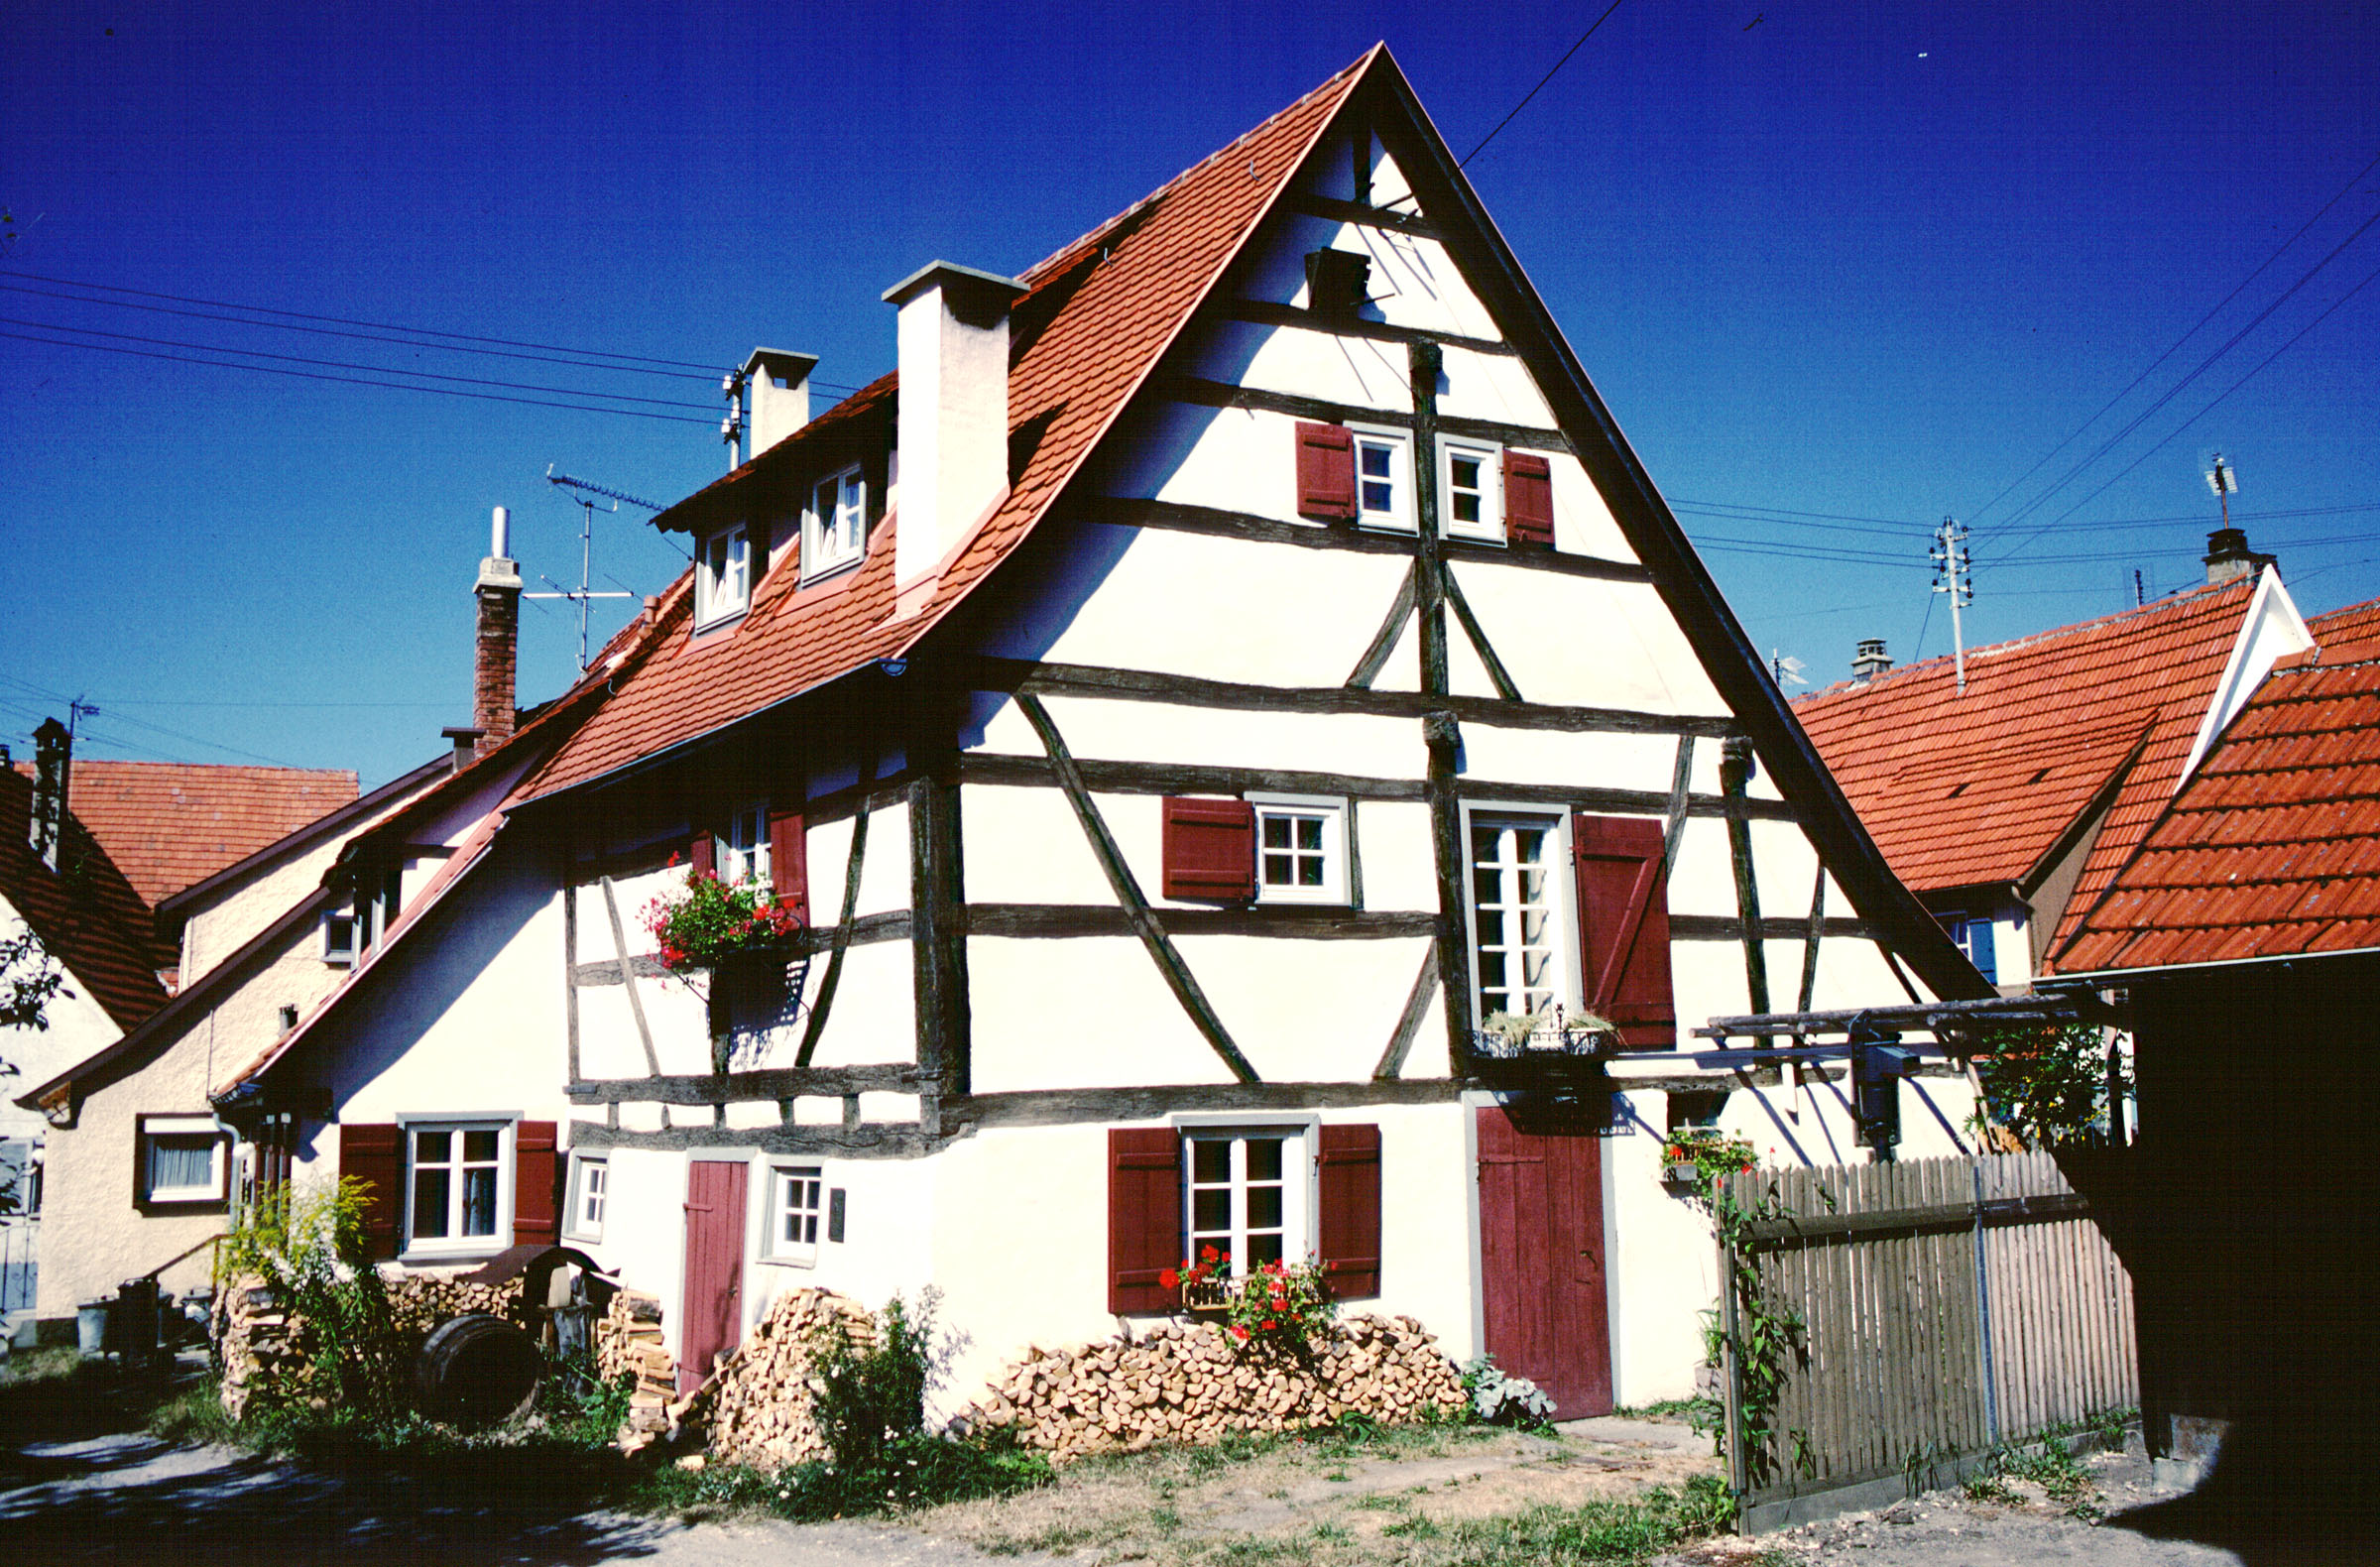 Das Rechenmacherhaus in Mössingen stammt aus dem 16. Jahrhundert und zeigt die beengten Wohn- und Alltagsverhältnisse in früheren Zeiten. Quelle: Museen Stadt Mössingen